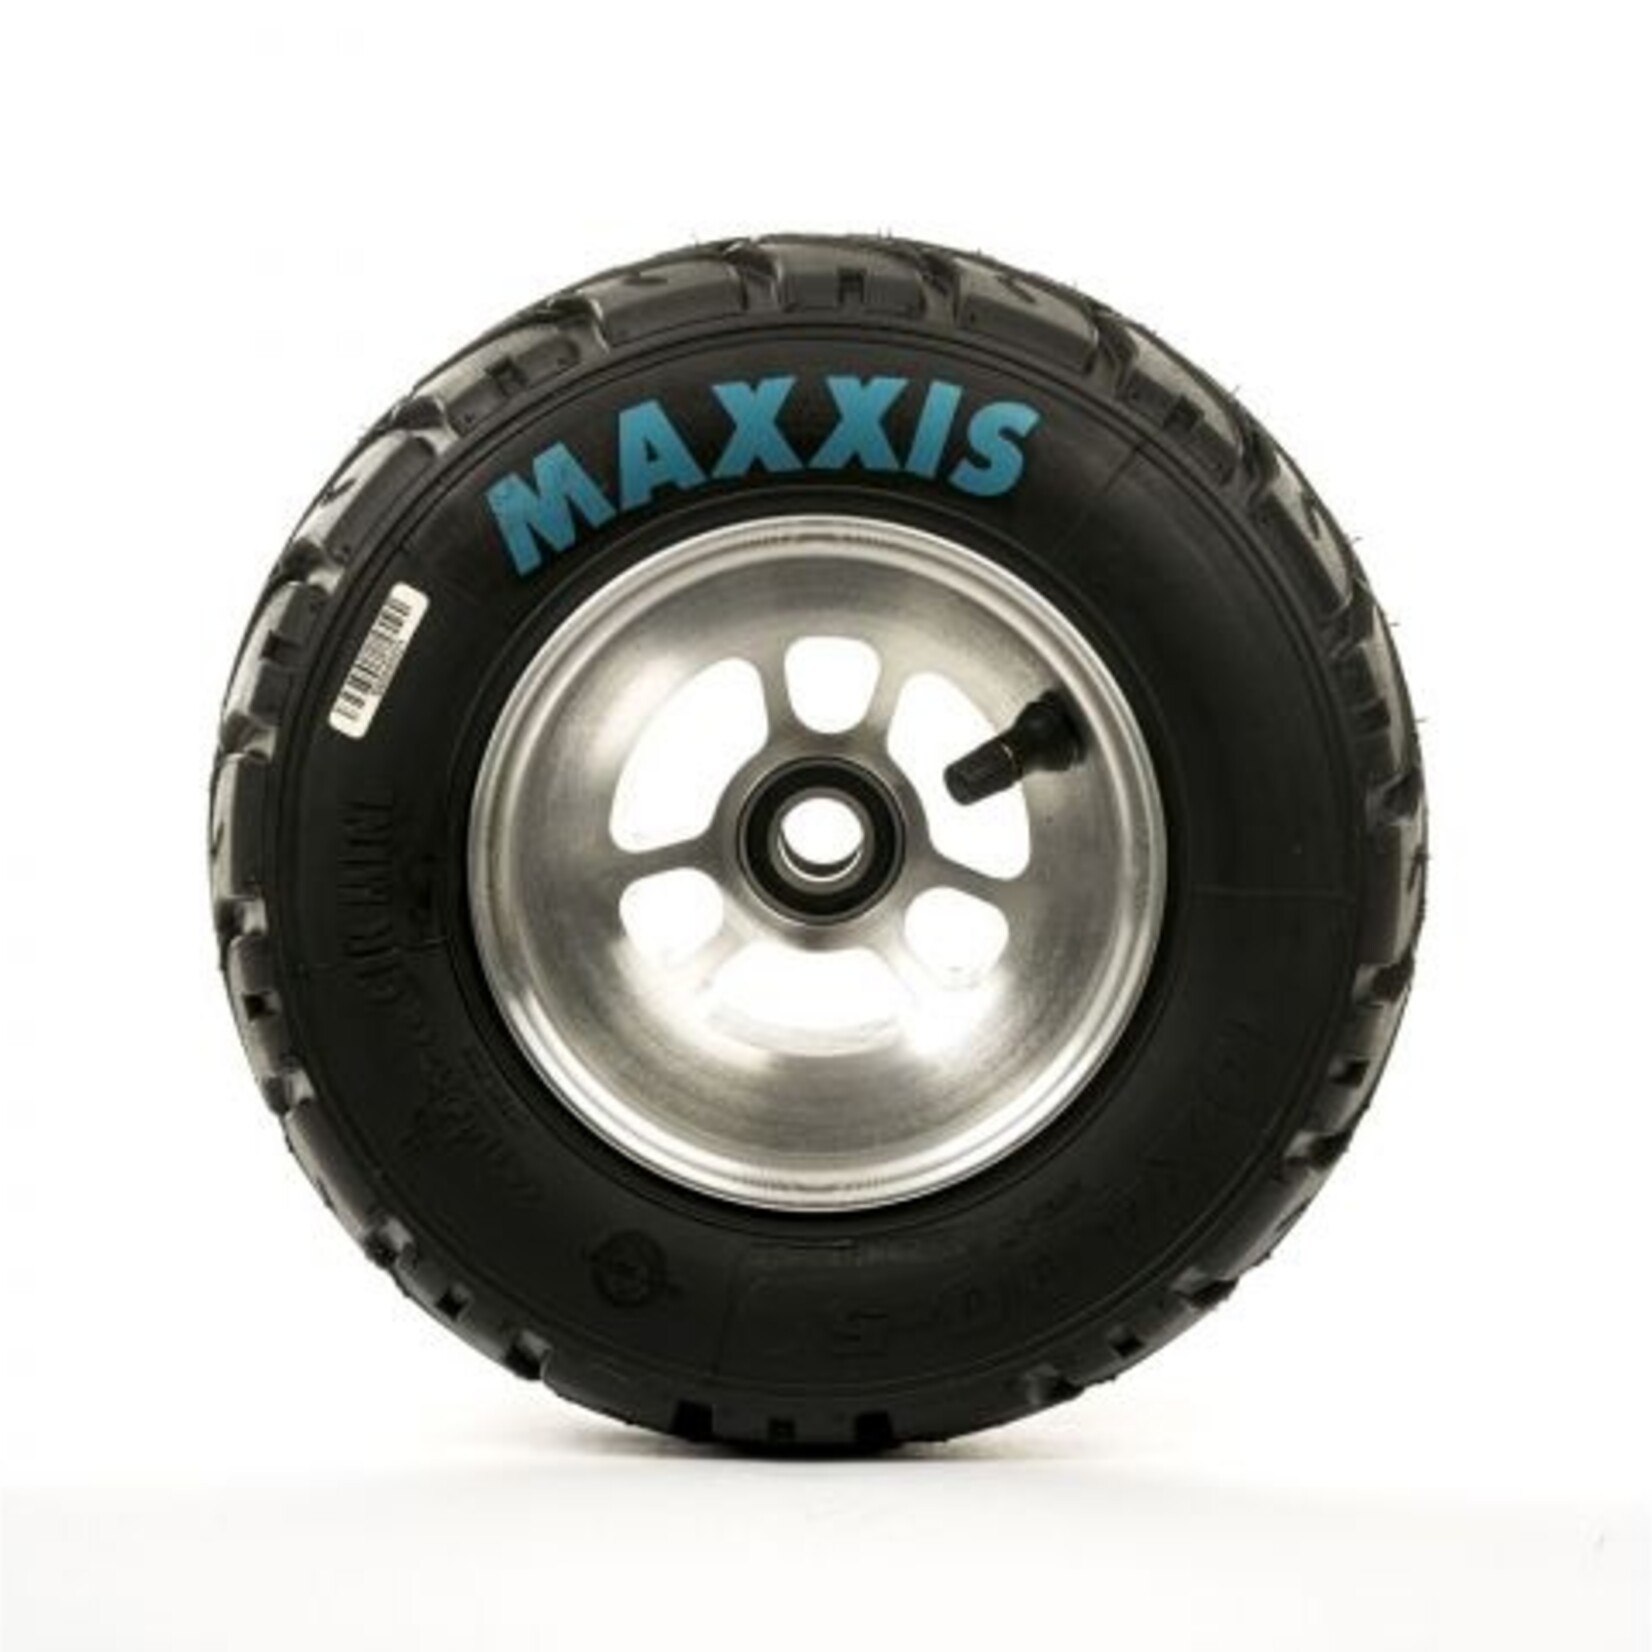 Maxxis MAXXIS MINI Regenband 10X4.00-5 mw21 (voorband)